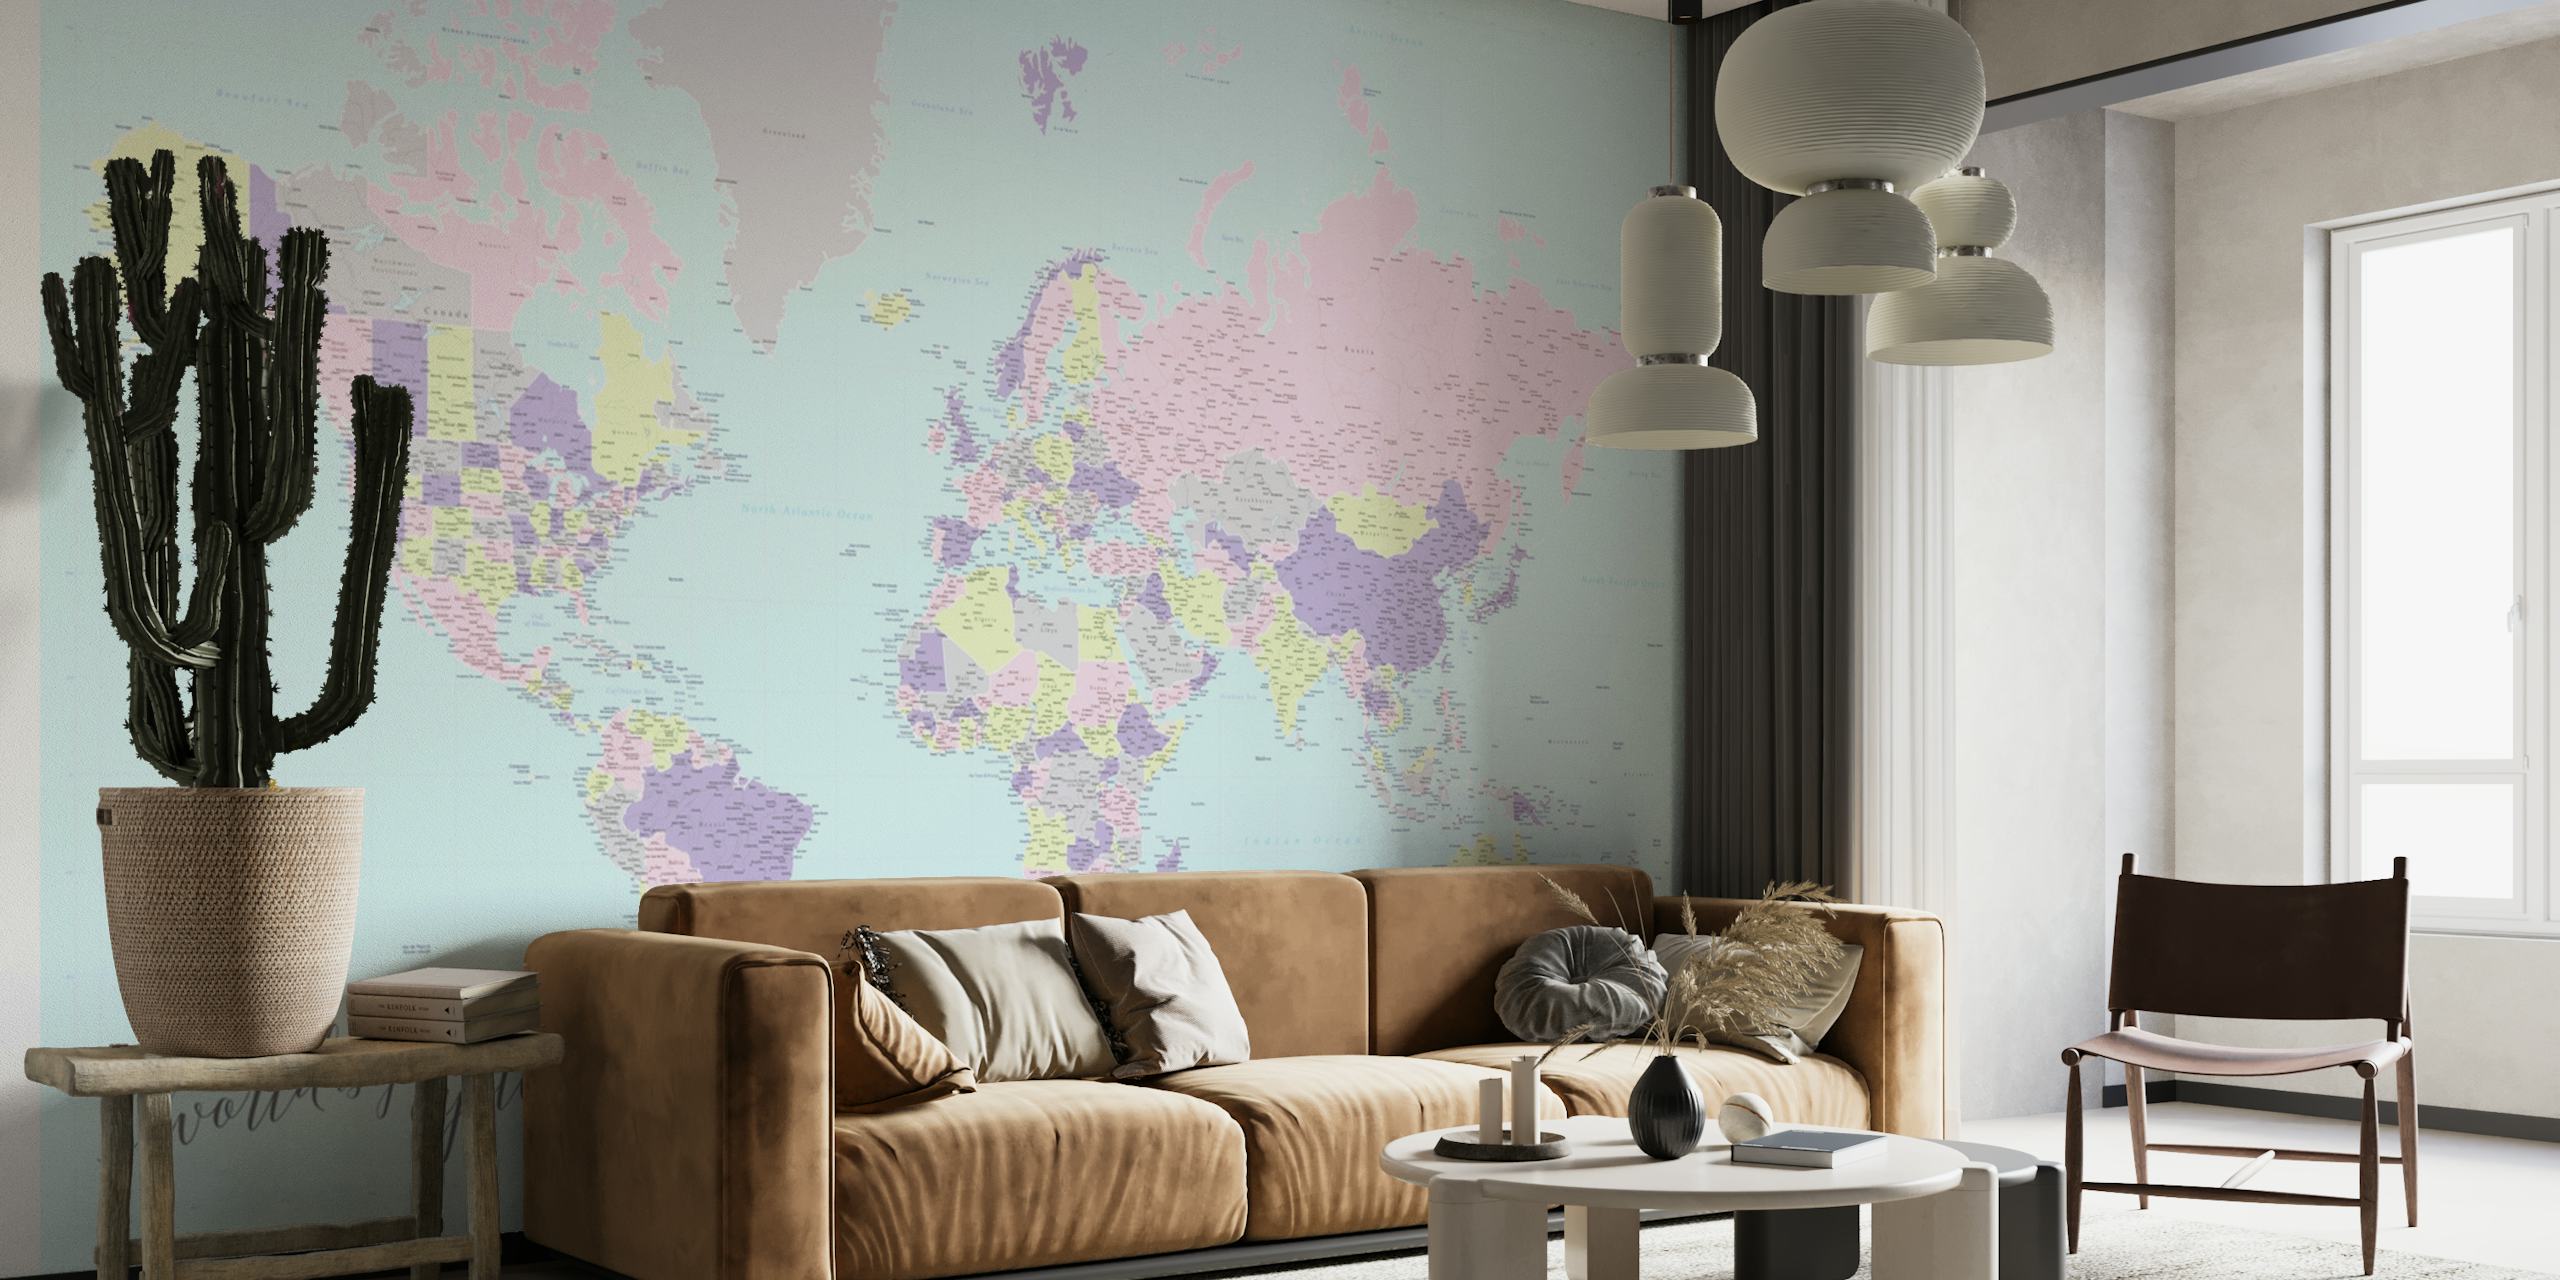 Nástěnná malba Hatsu v pastelových barvách Oyster World Map s uměleckými vyobrazeními kontinentů